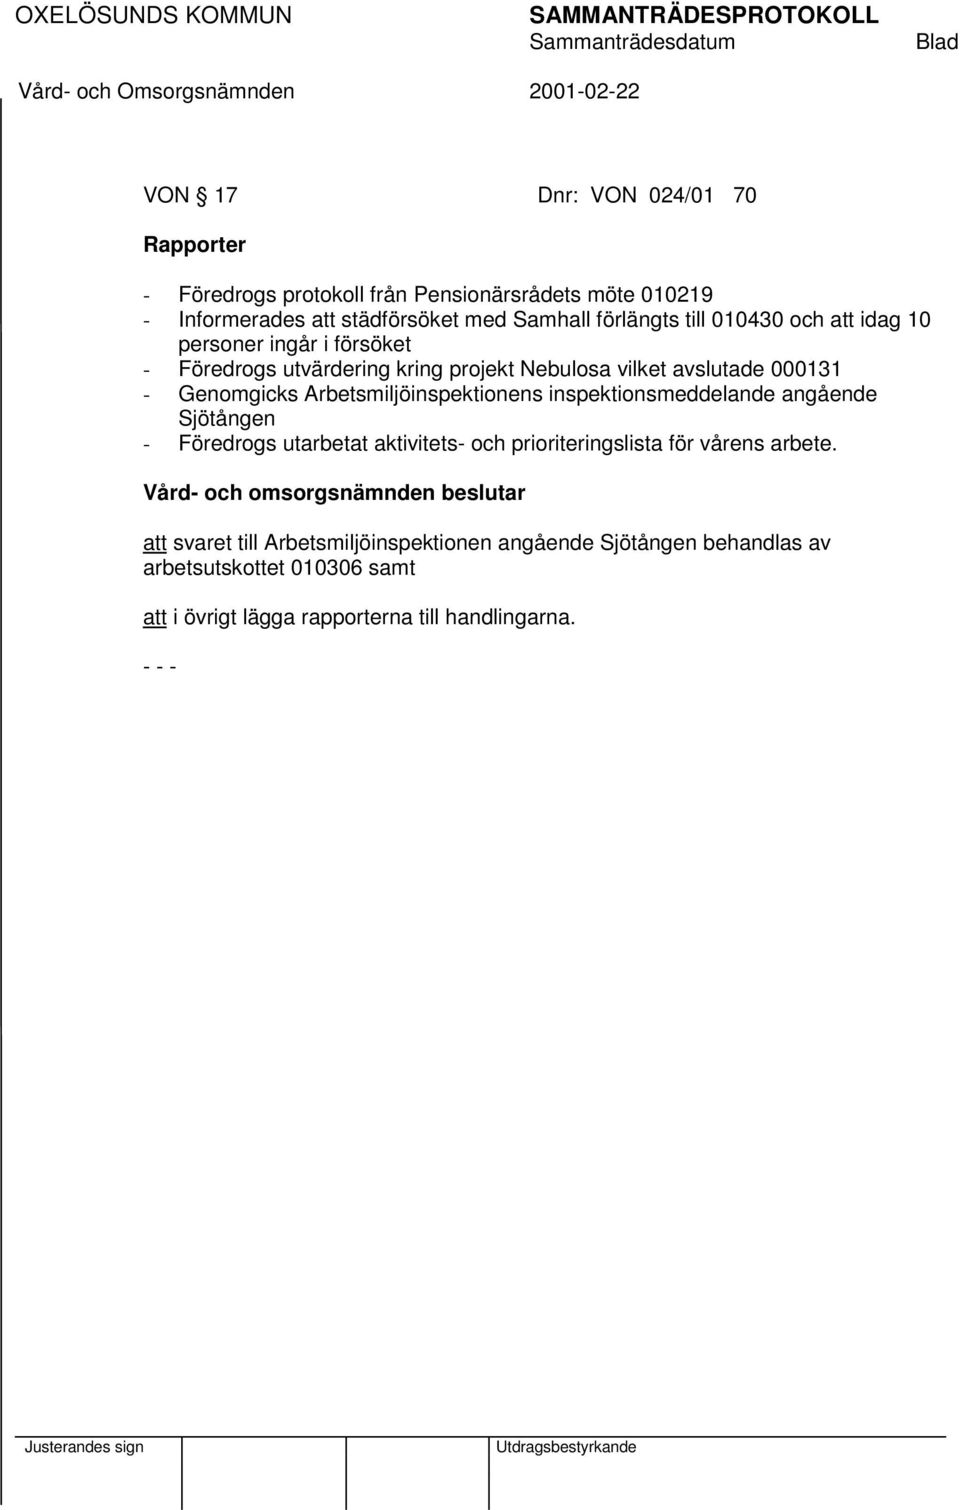 Genomgicks Arbetsmiljöinspektionens inspektionsmeddelande angående Sjötången - Föredrogs utarbetat aktivitets- och prioriteringslista för